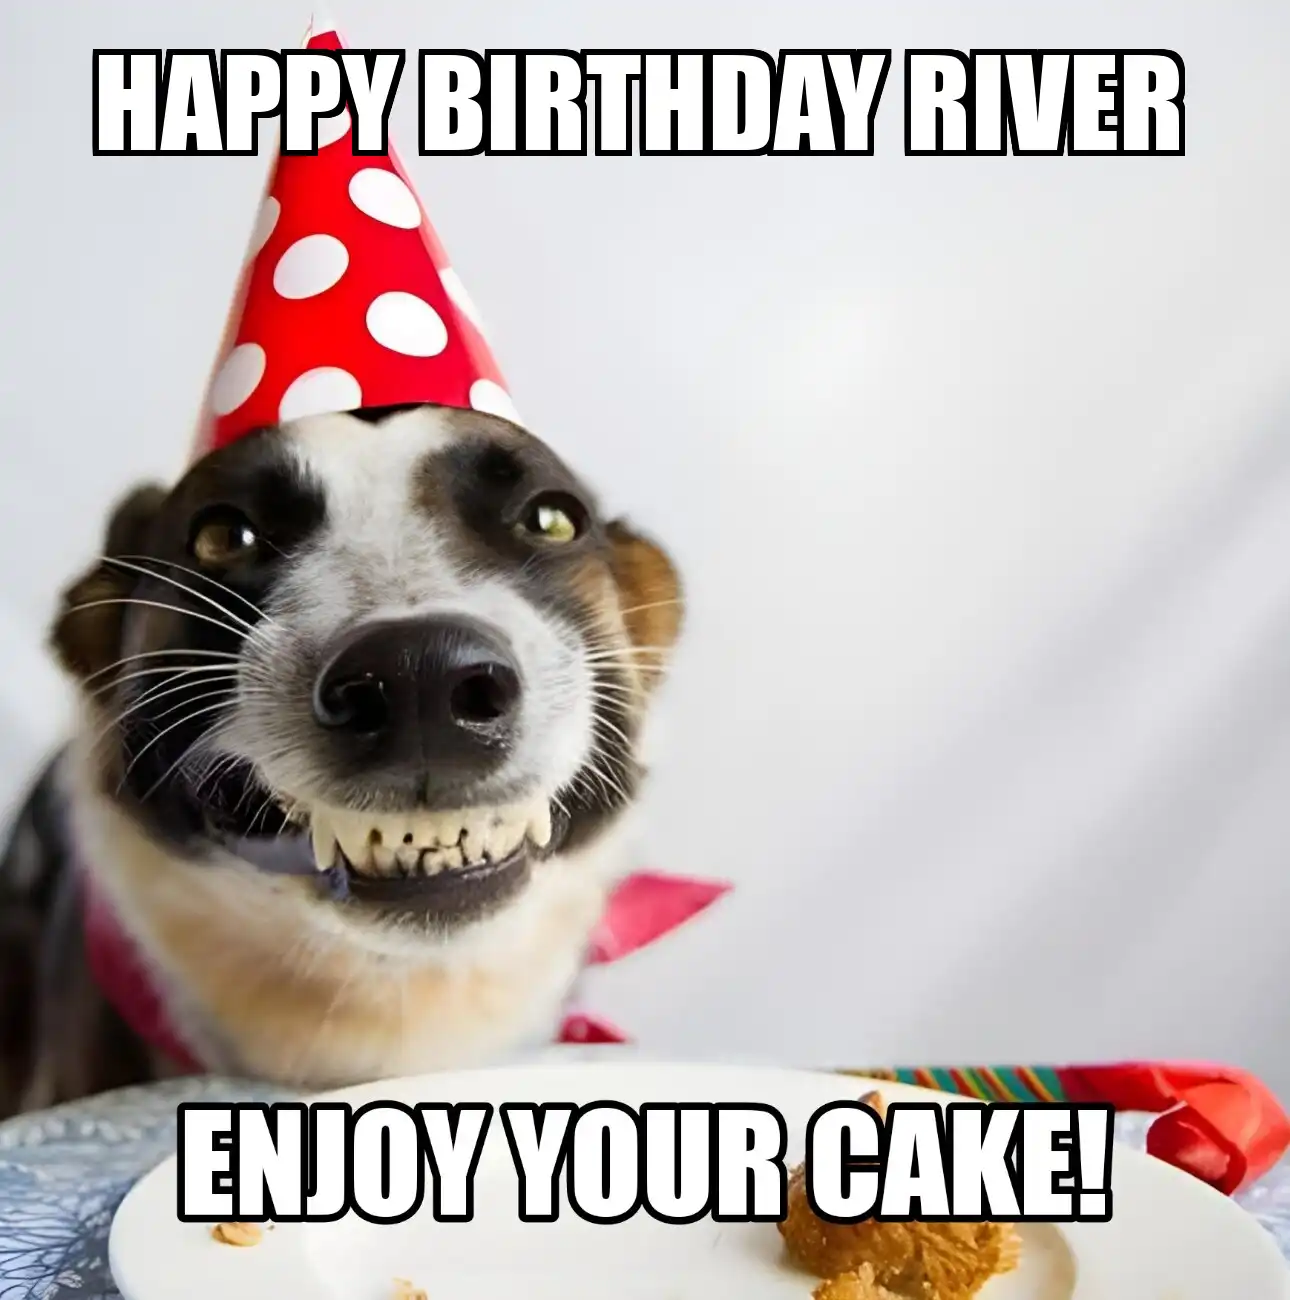 Happy Birthday River Enjoy Your Cake Dog Meme